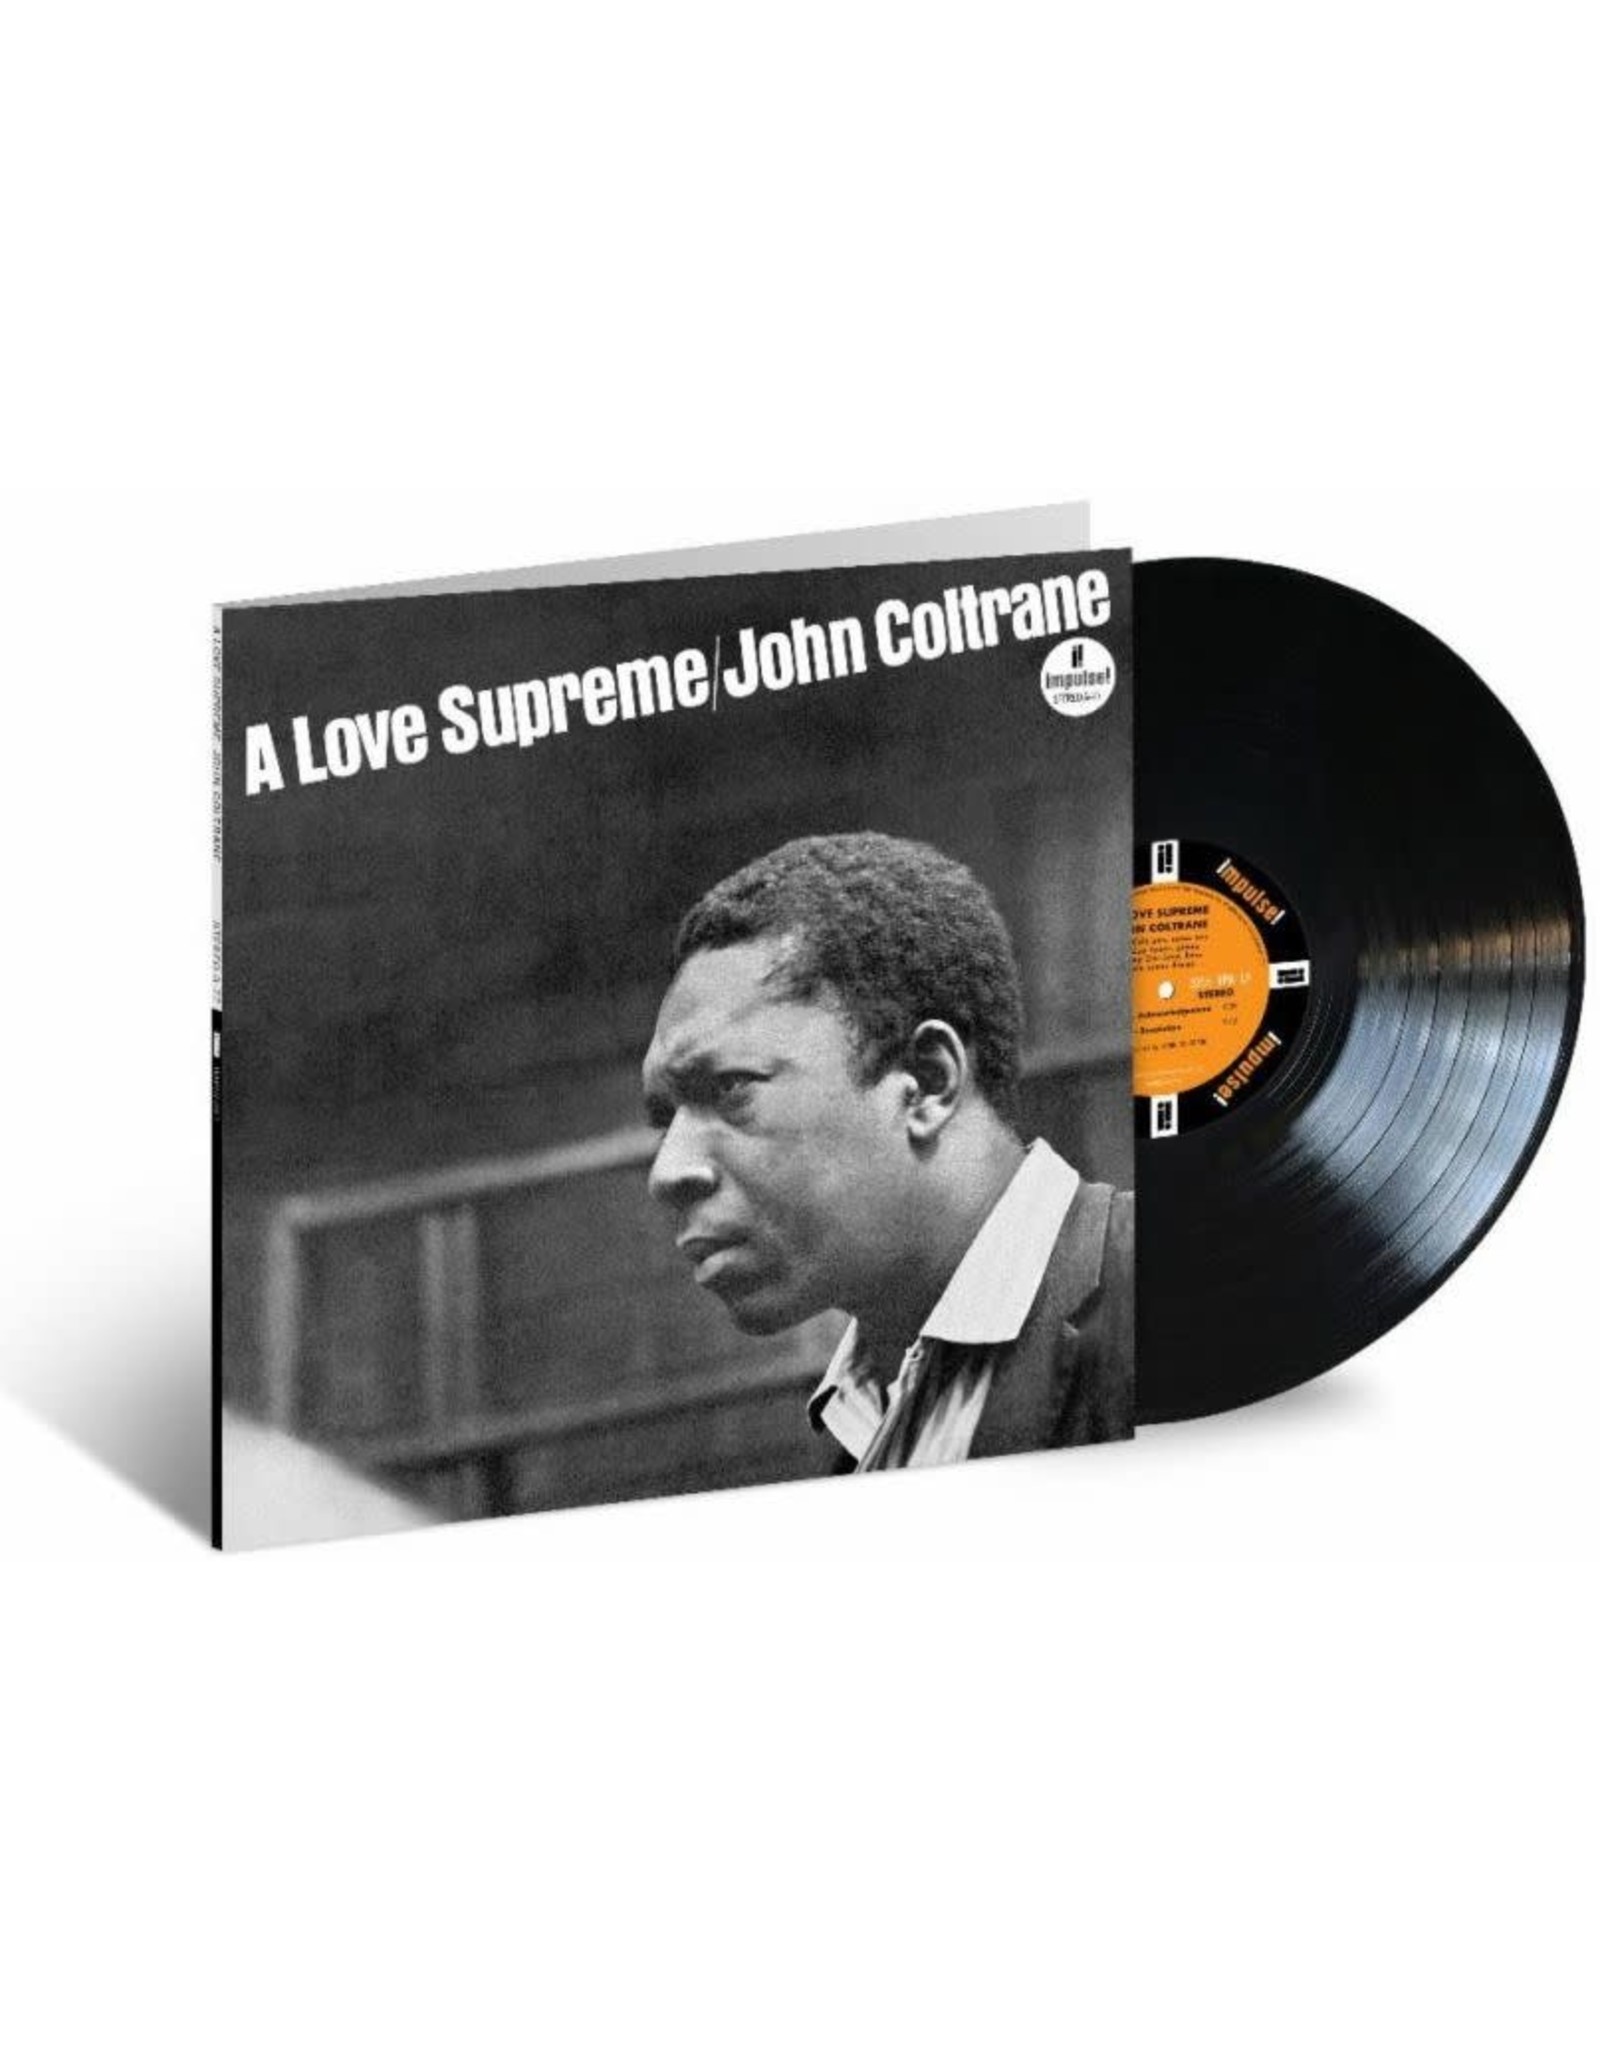 John Coltrane - A Love Supreme (Acoustic Sounds Series)